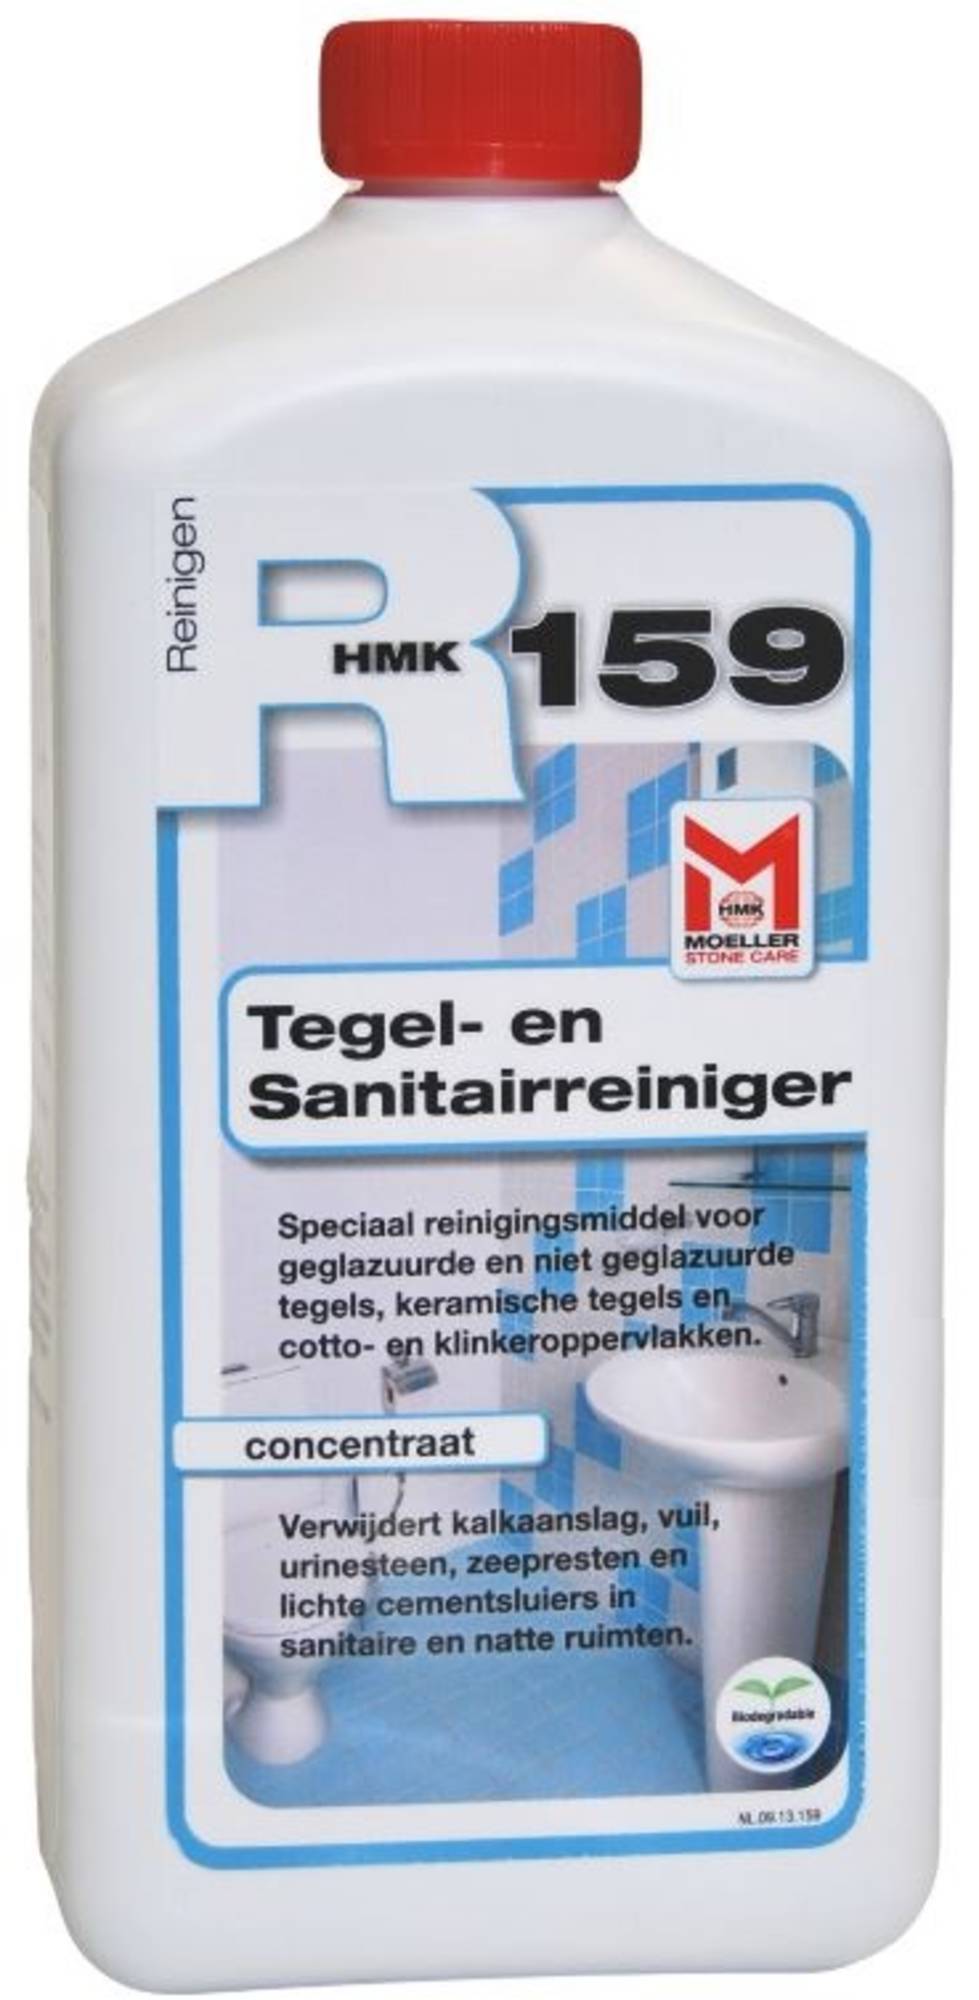 Hmk HMK R159 Tegel en Sanitairreiniger 1 Liter Allesreiniger of reiniger voor tegels en sanitair. Niet te gebruiken op natuursteen zoals marmer en hardsteen